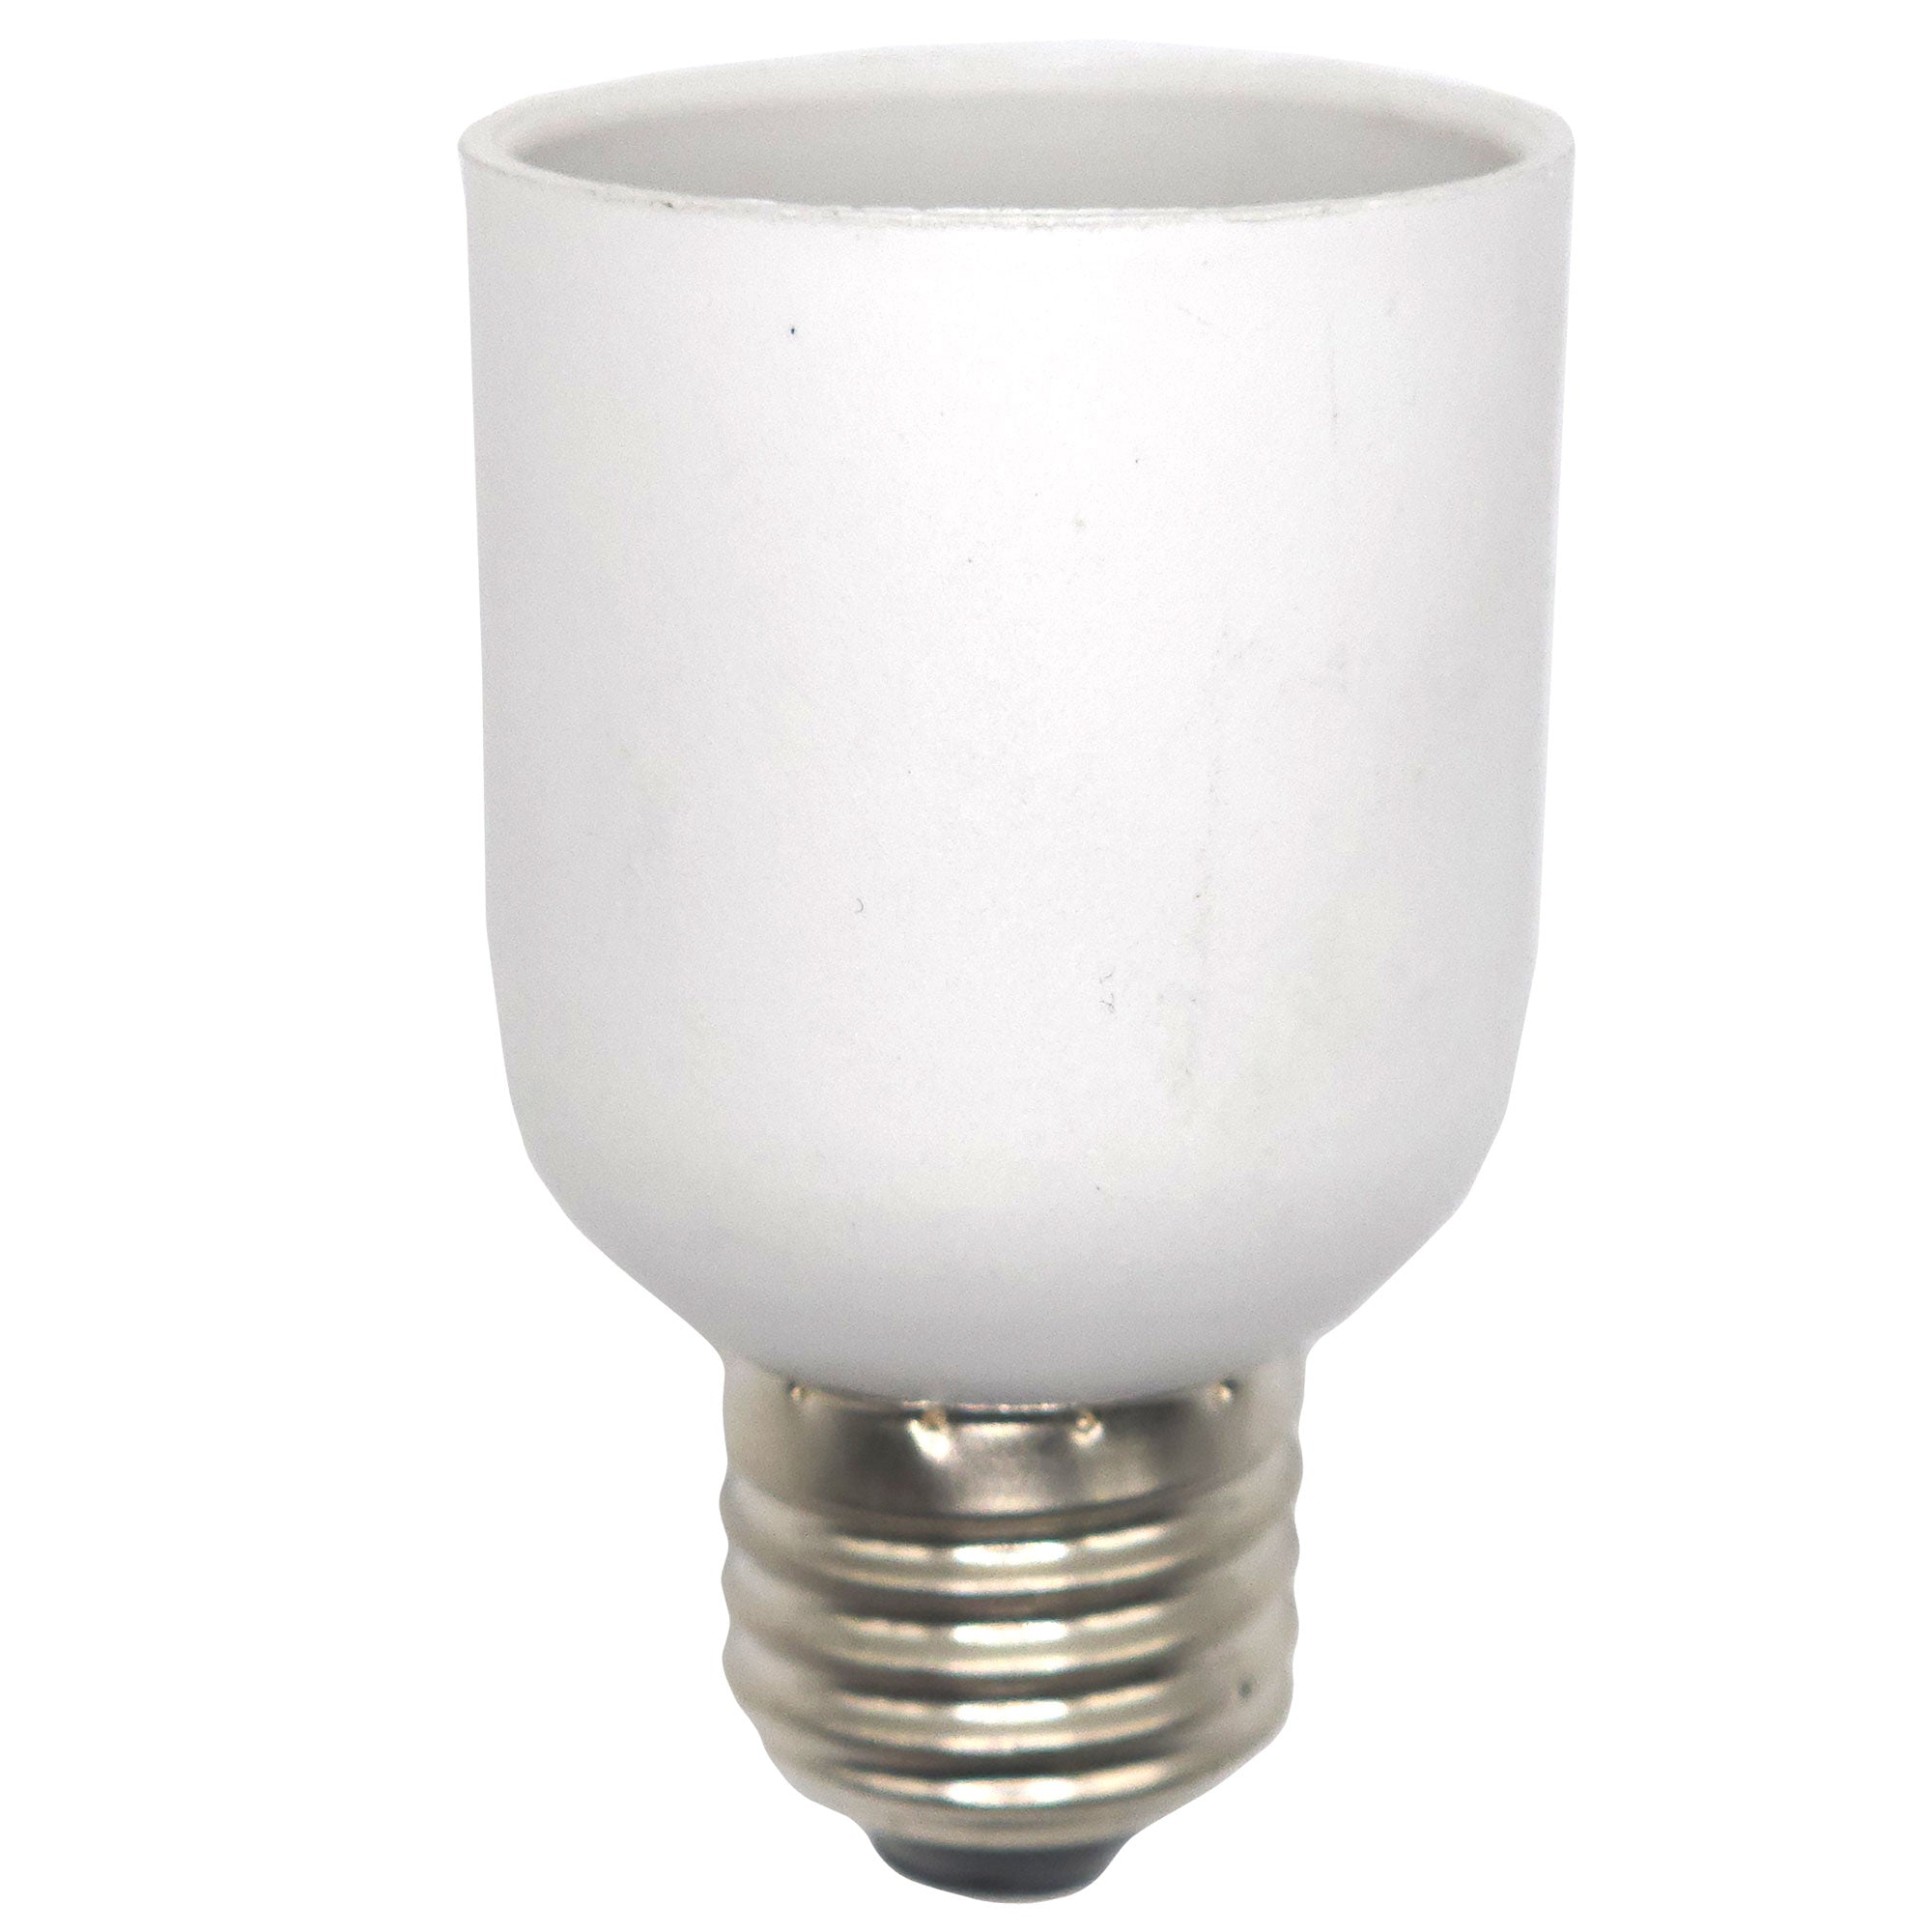 60-Watt E39/E26 5620 Lumens Internal Fan Suitable LED Corn Bulb